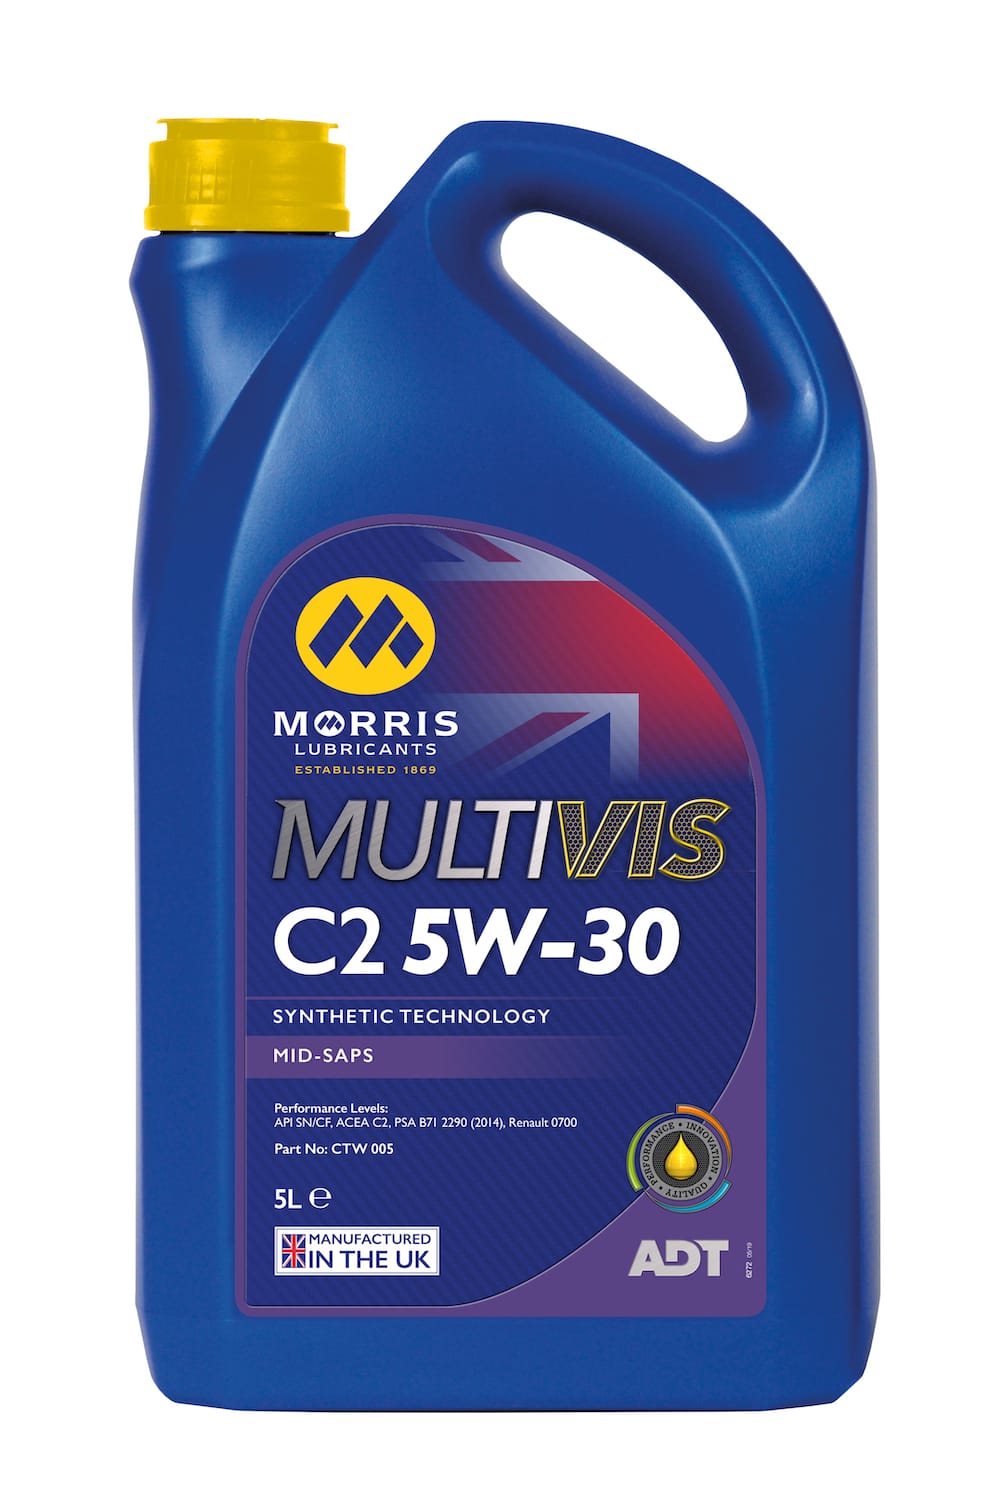 Morris Multivis C2 5W-30